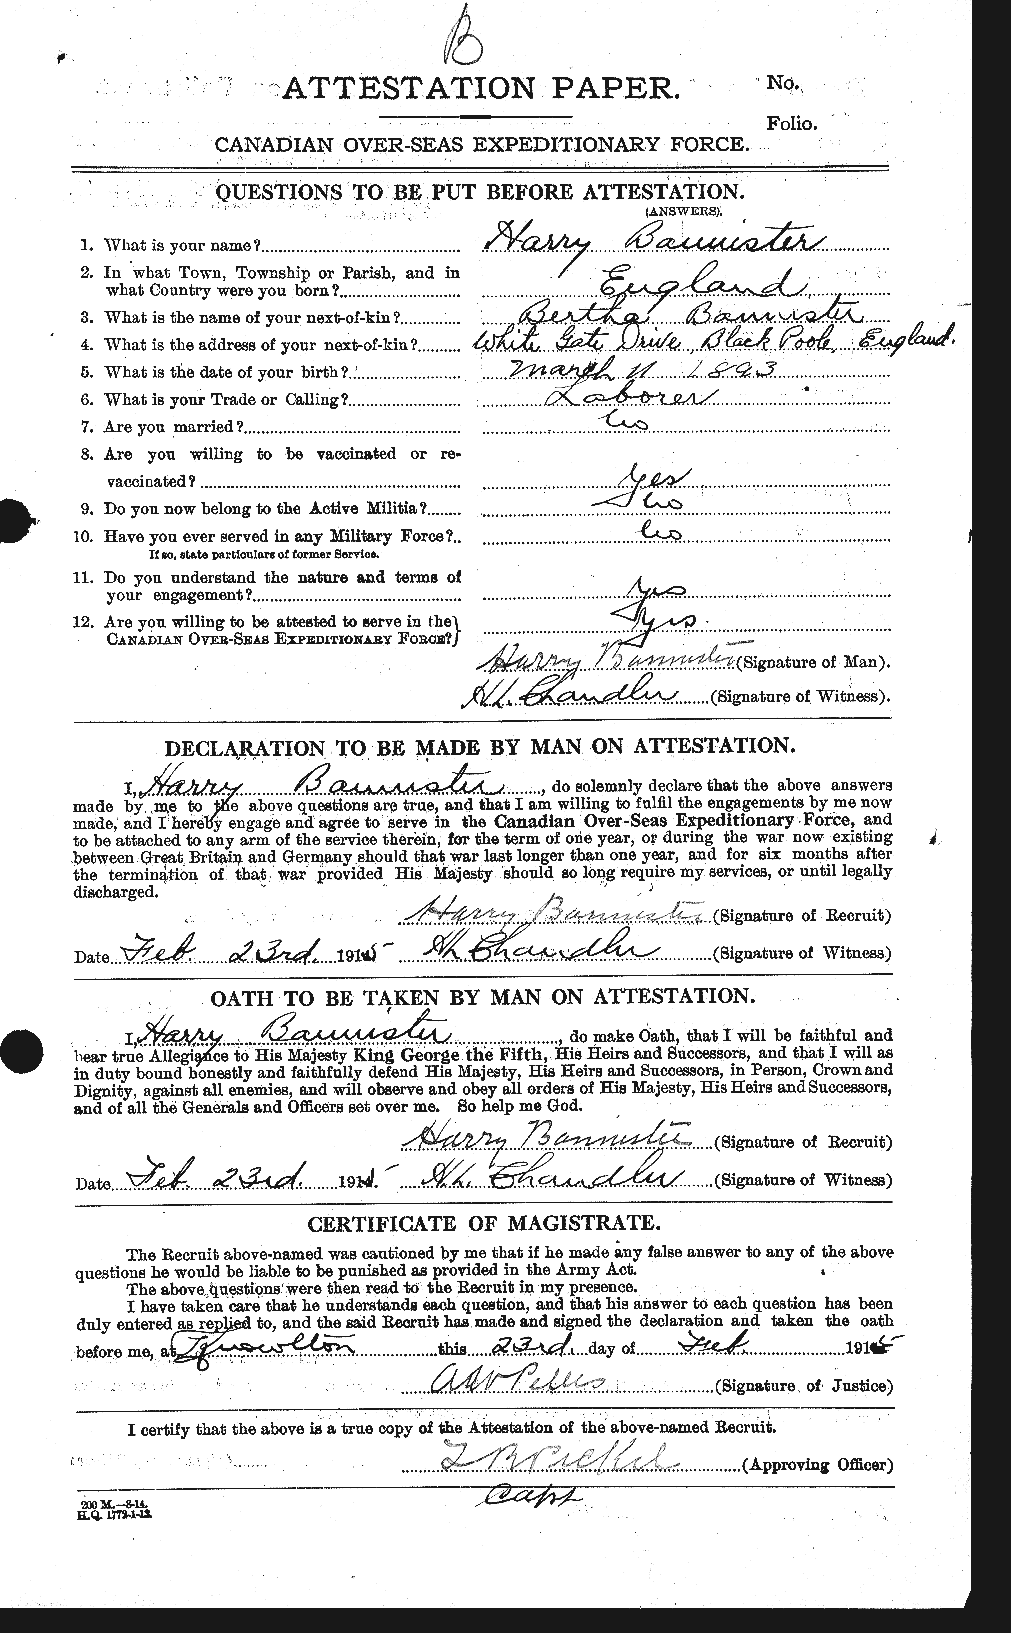 Dossiers du Personnel de la Première Guerre mondiale - CEC 224794a